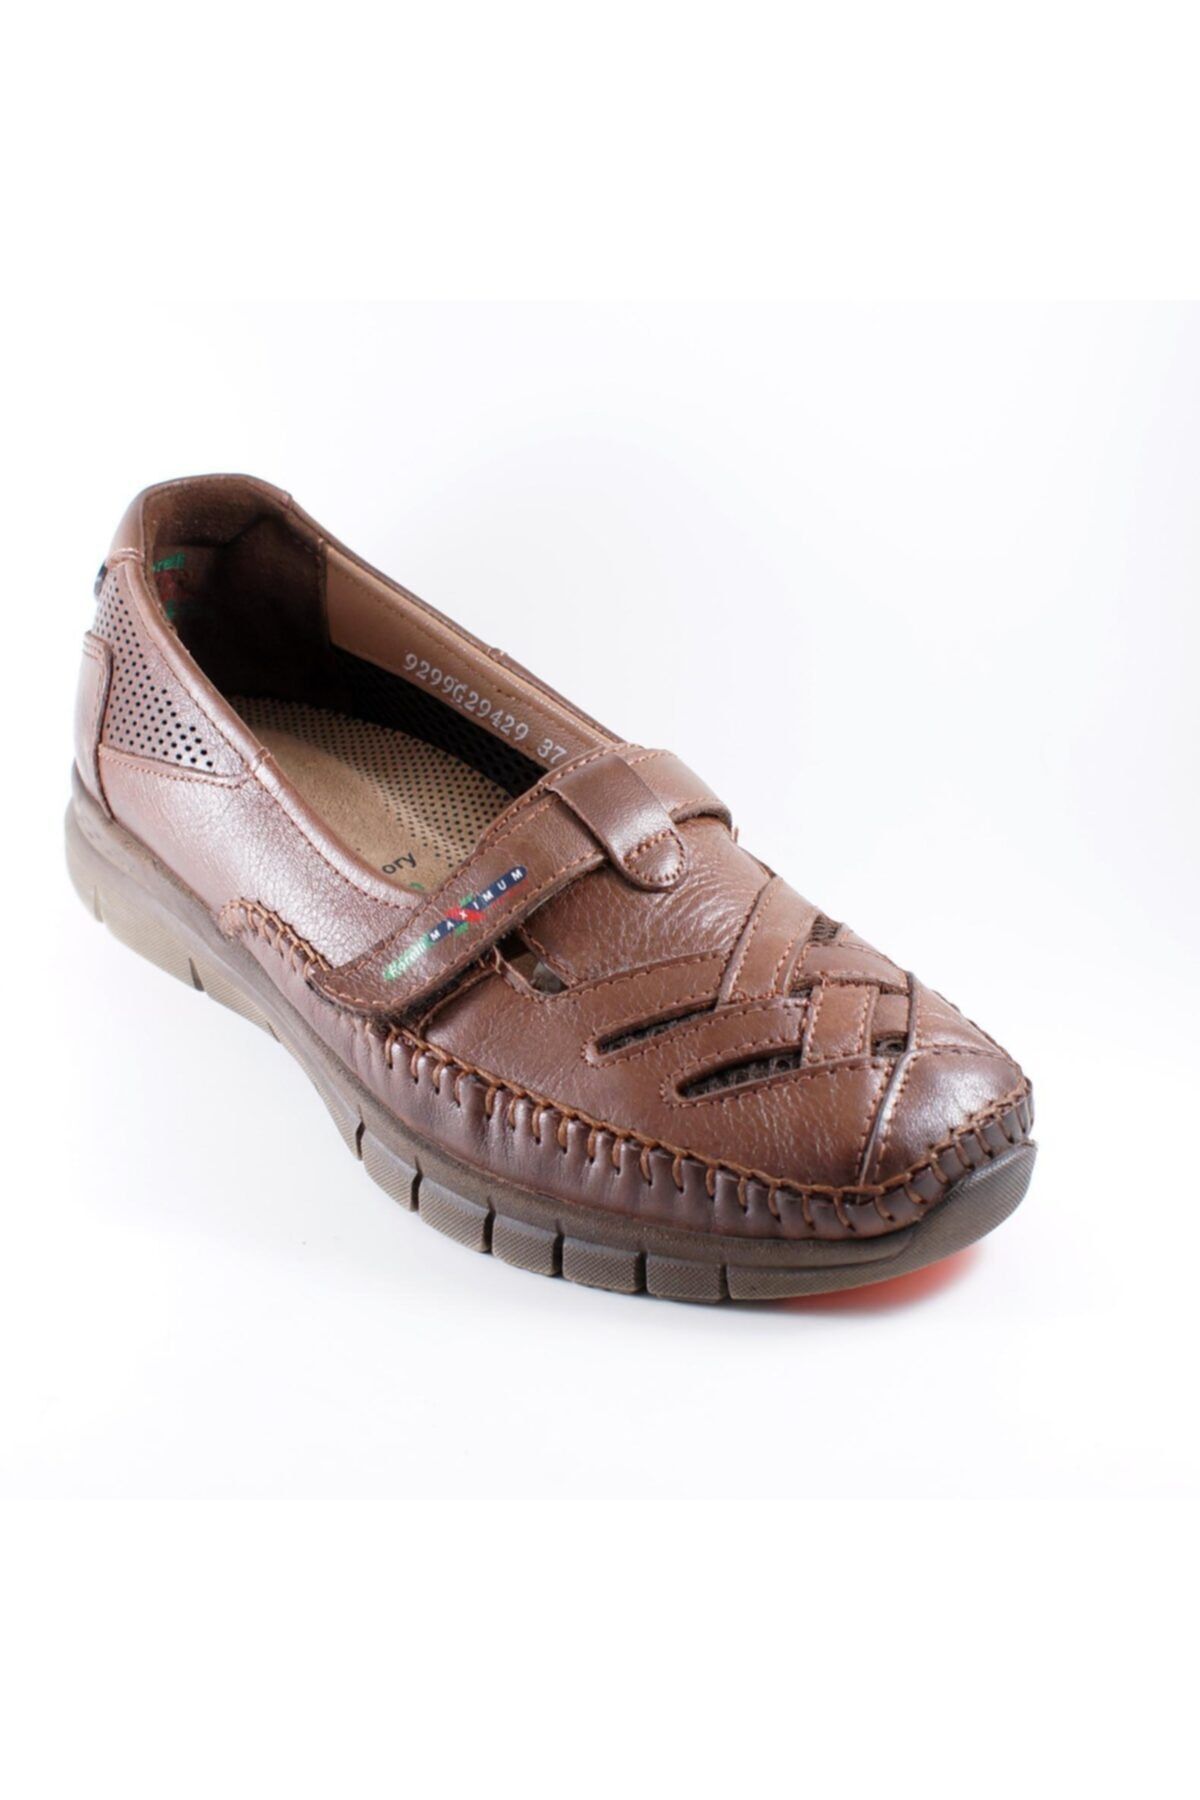 Forelli 29429-g Comfort Kadın Ayakkabı Siyah